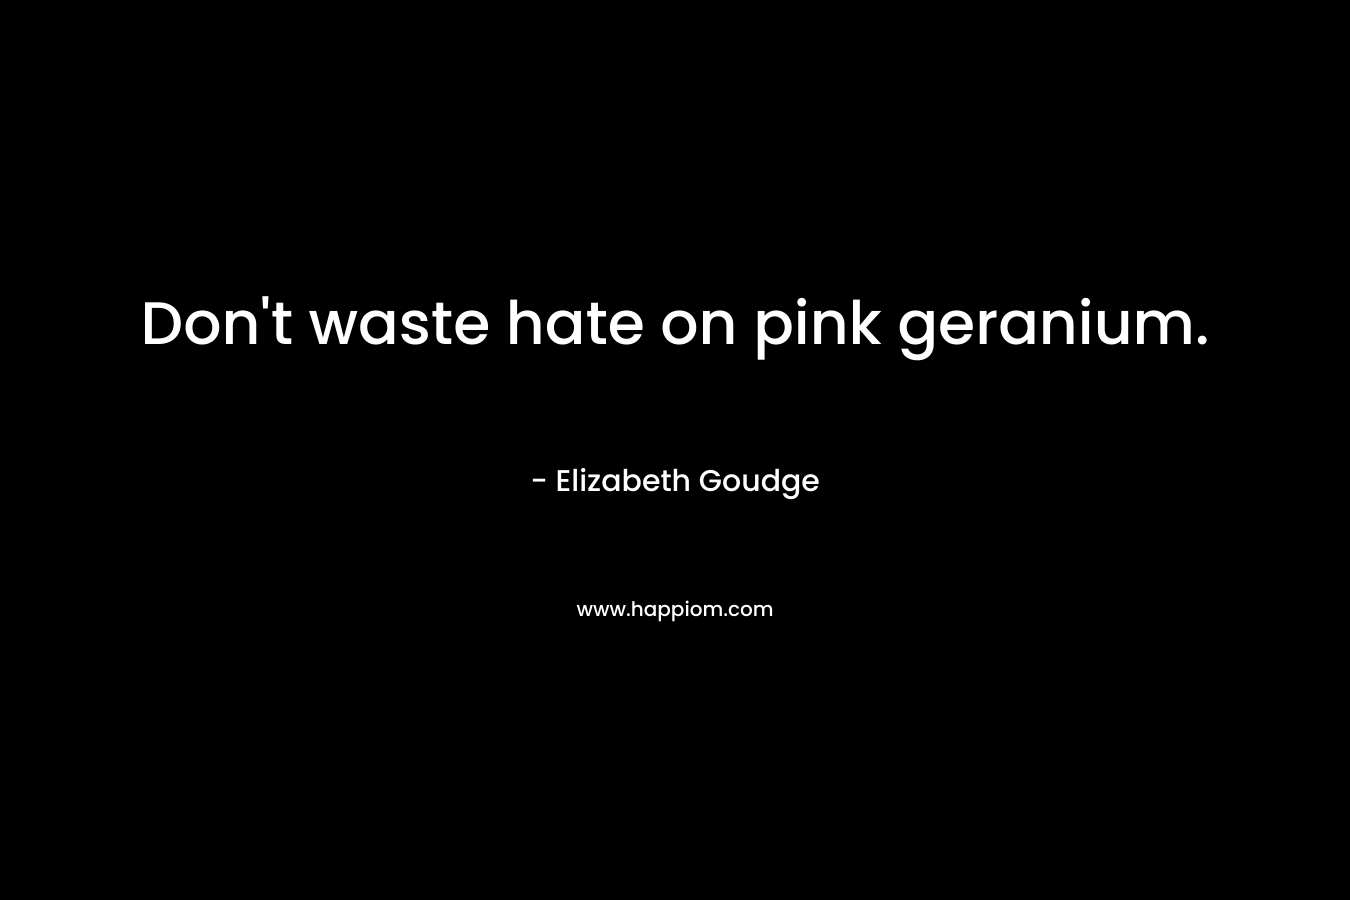 Don’t waste hate on pink geranium. – Elizabeth Goudge